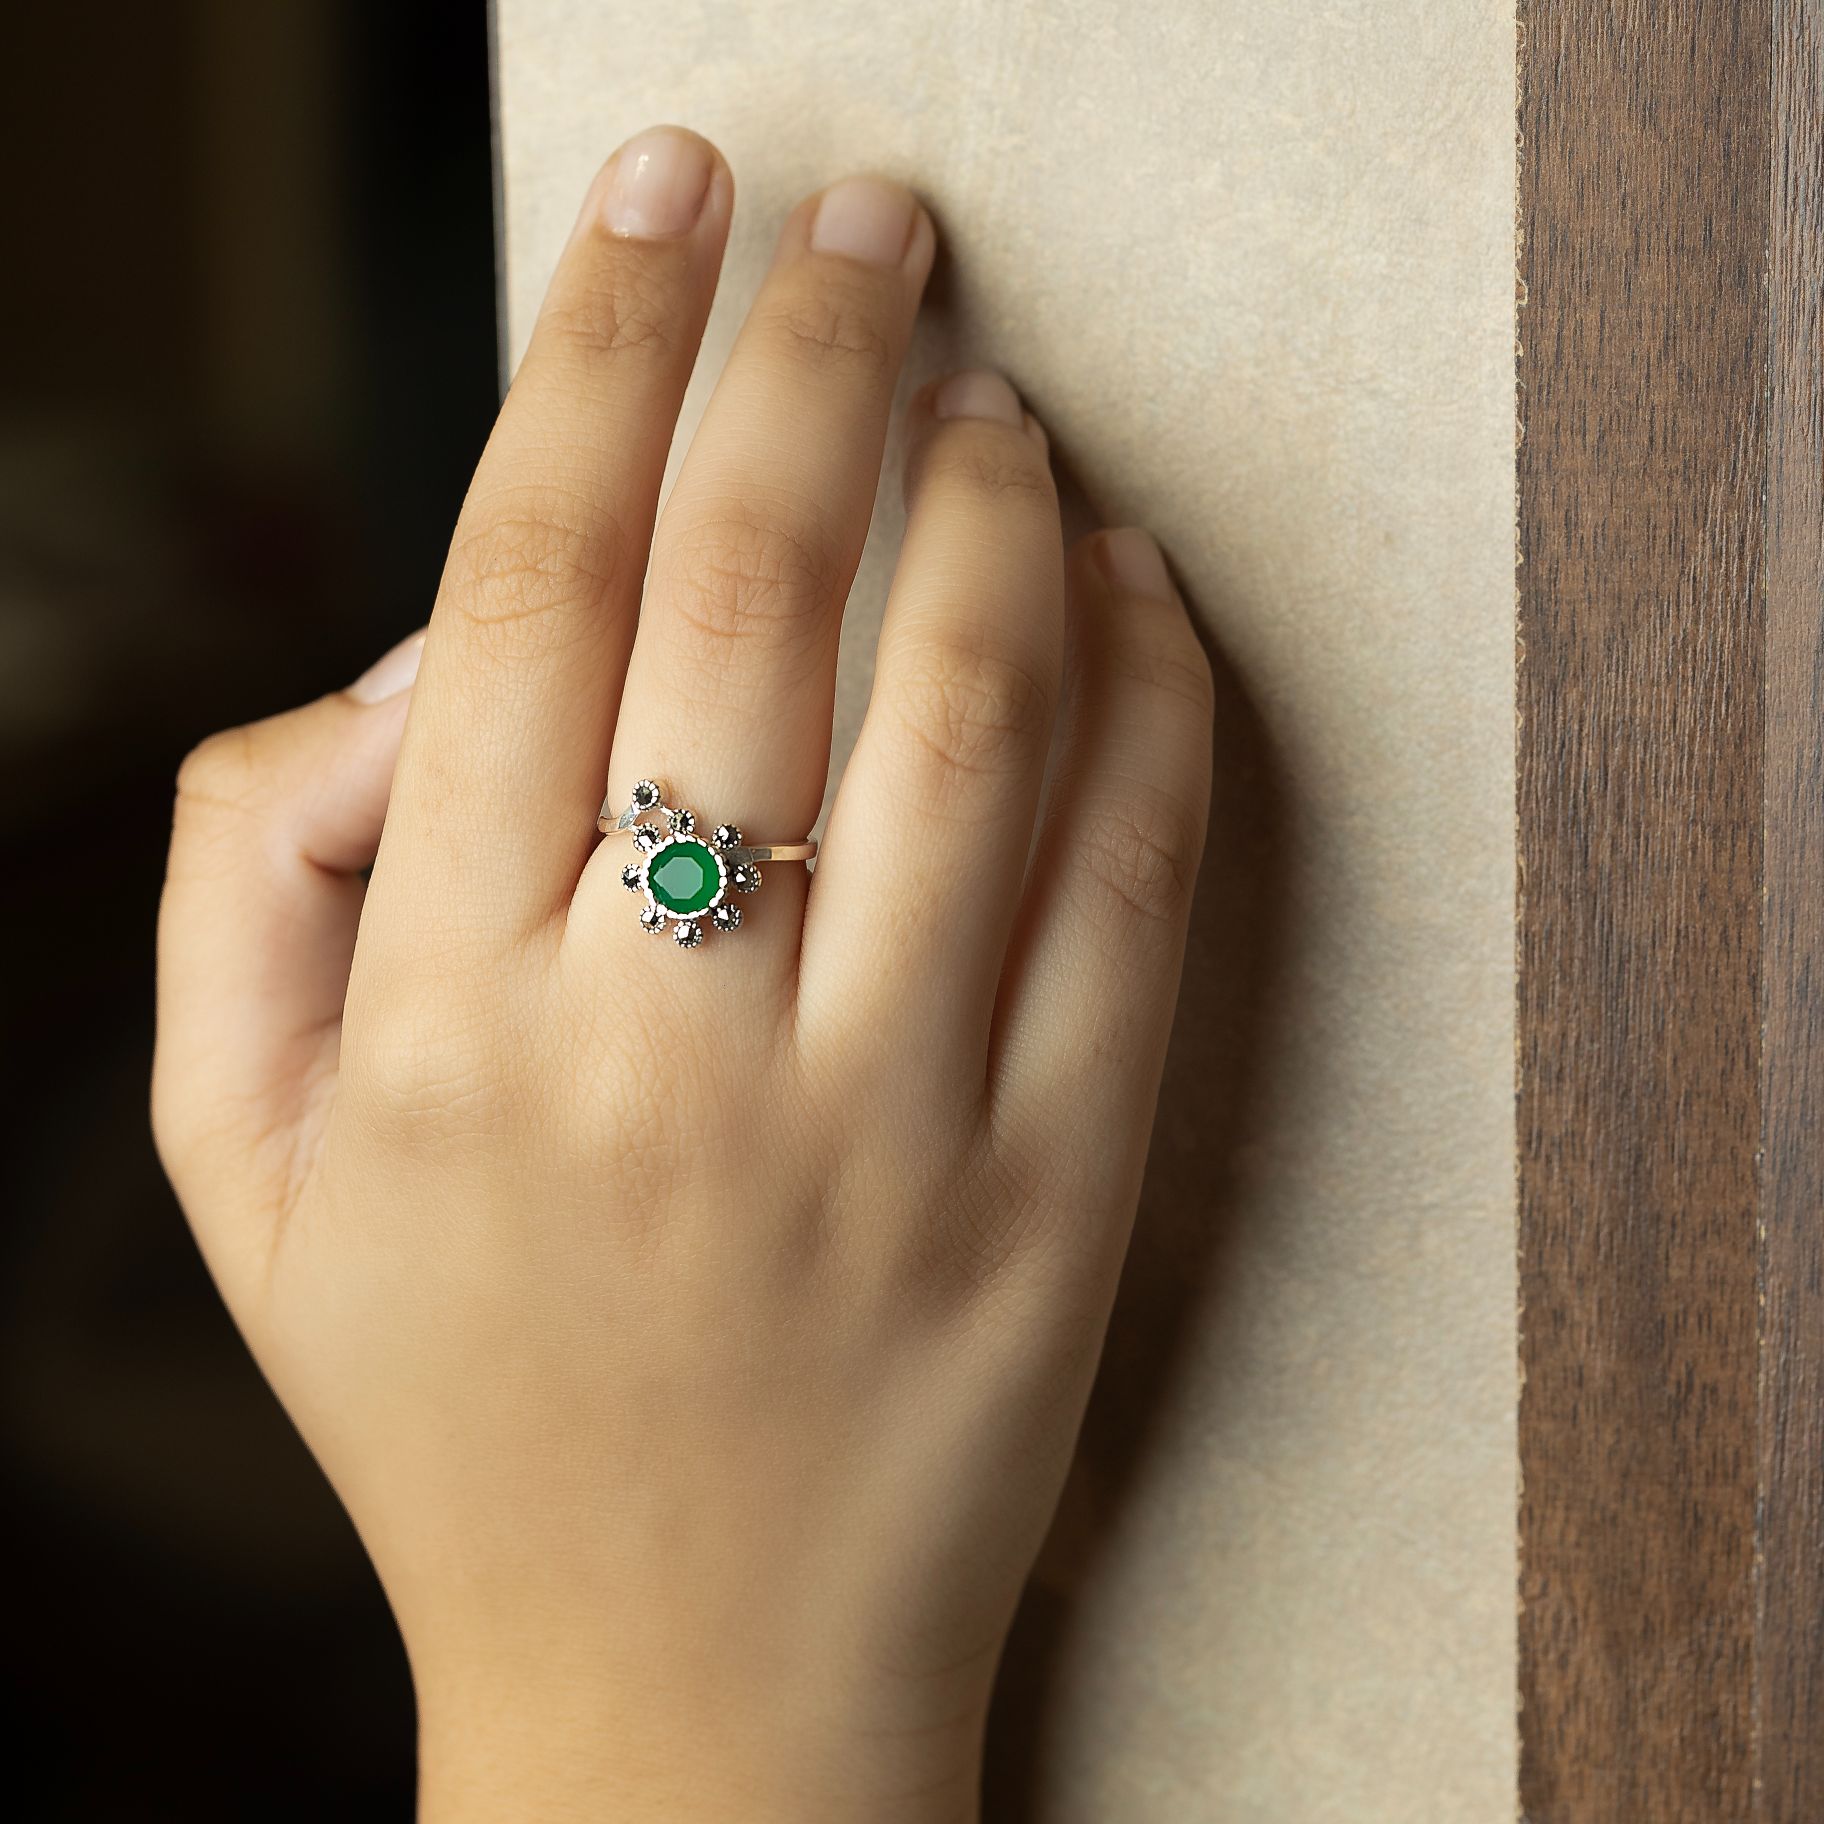 Elegant Ring With a Pretty flower silverhousebyrj